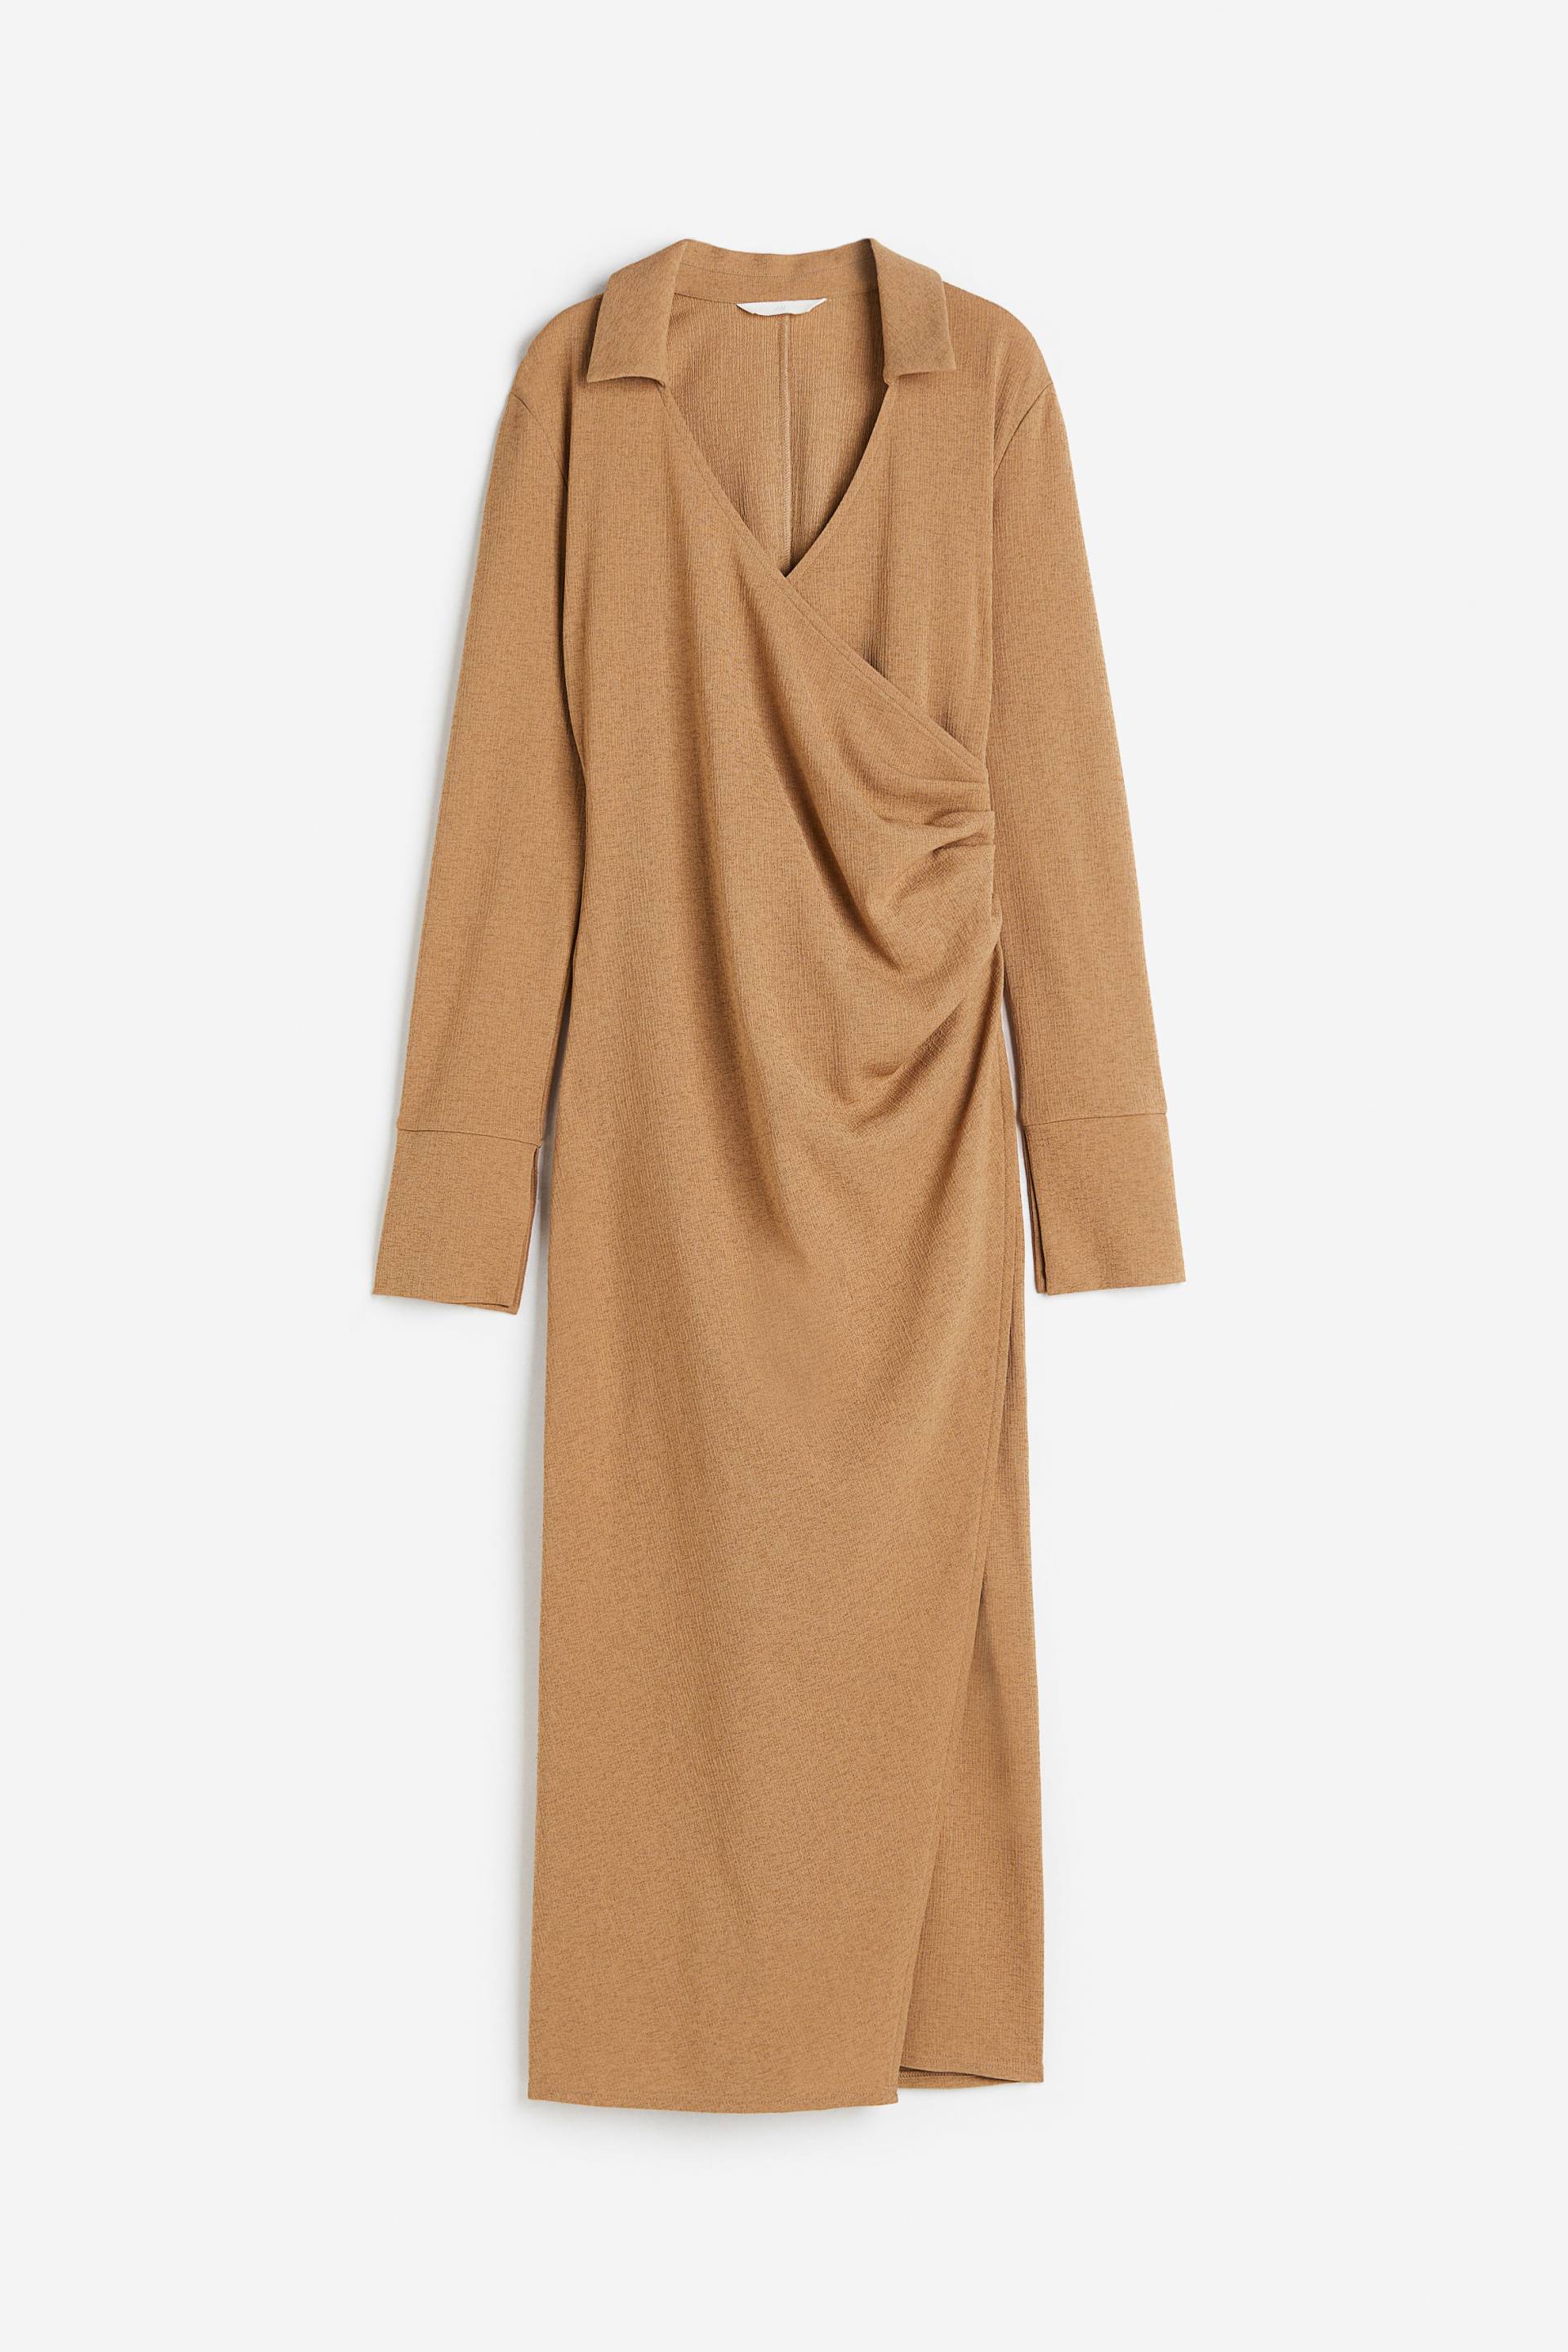 H&M Wickelkleid aus Jersey Dunkelbeige, Alltagskleider in Größe S. Farbe: Dark beige von H&M